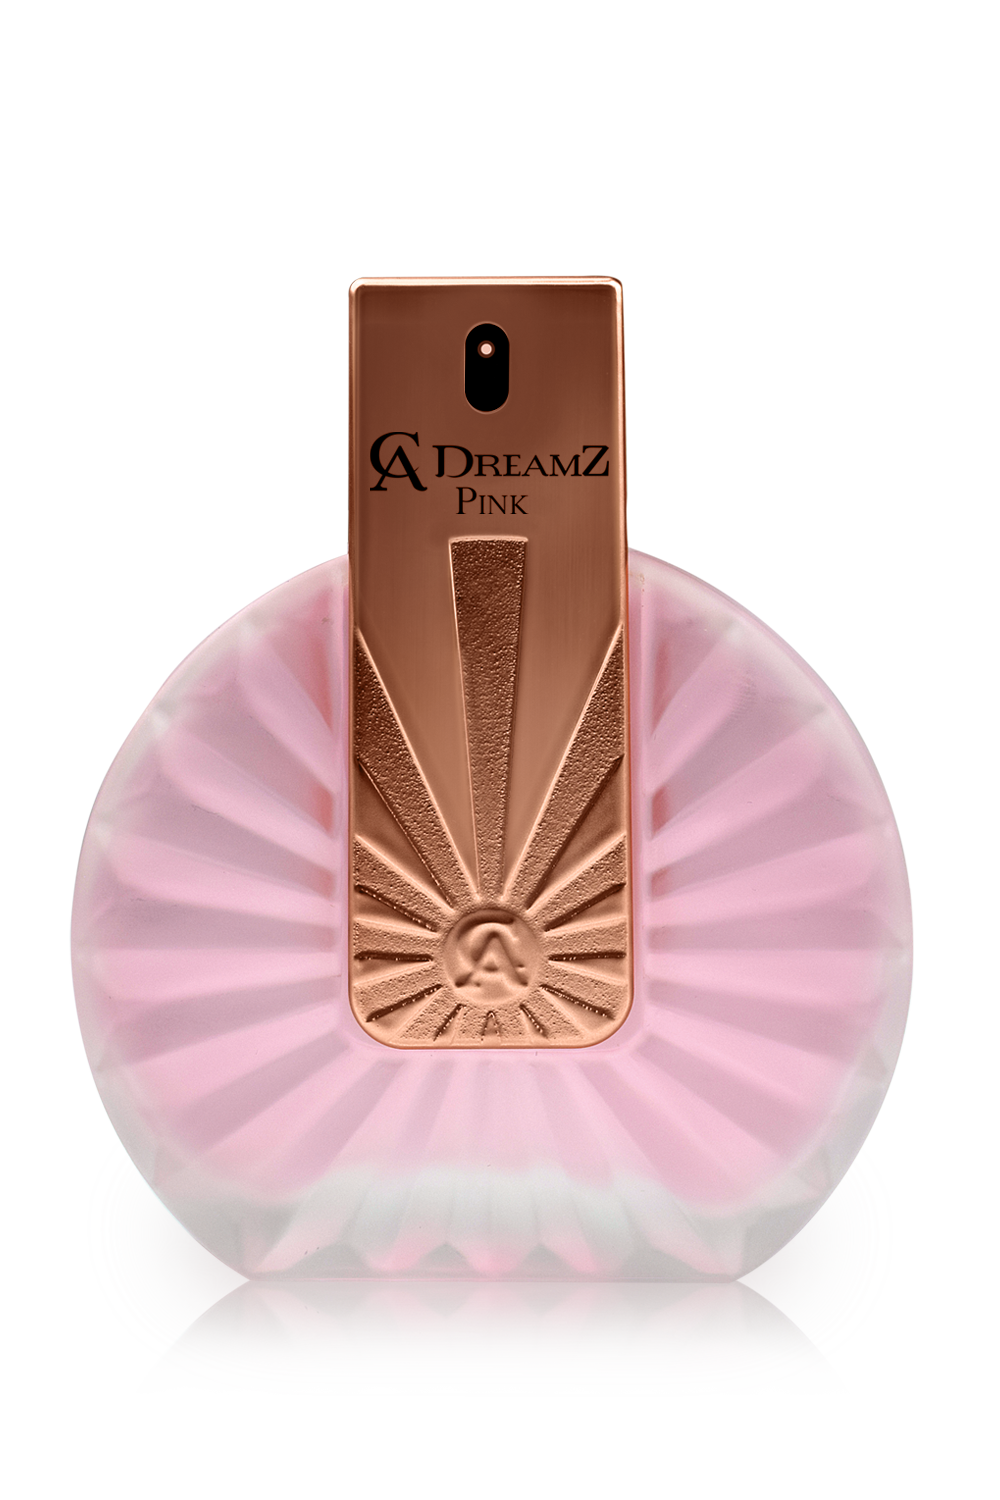 CA Dreamz Pink spray perfume